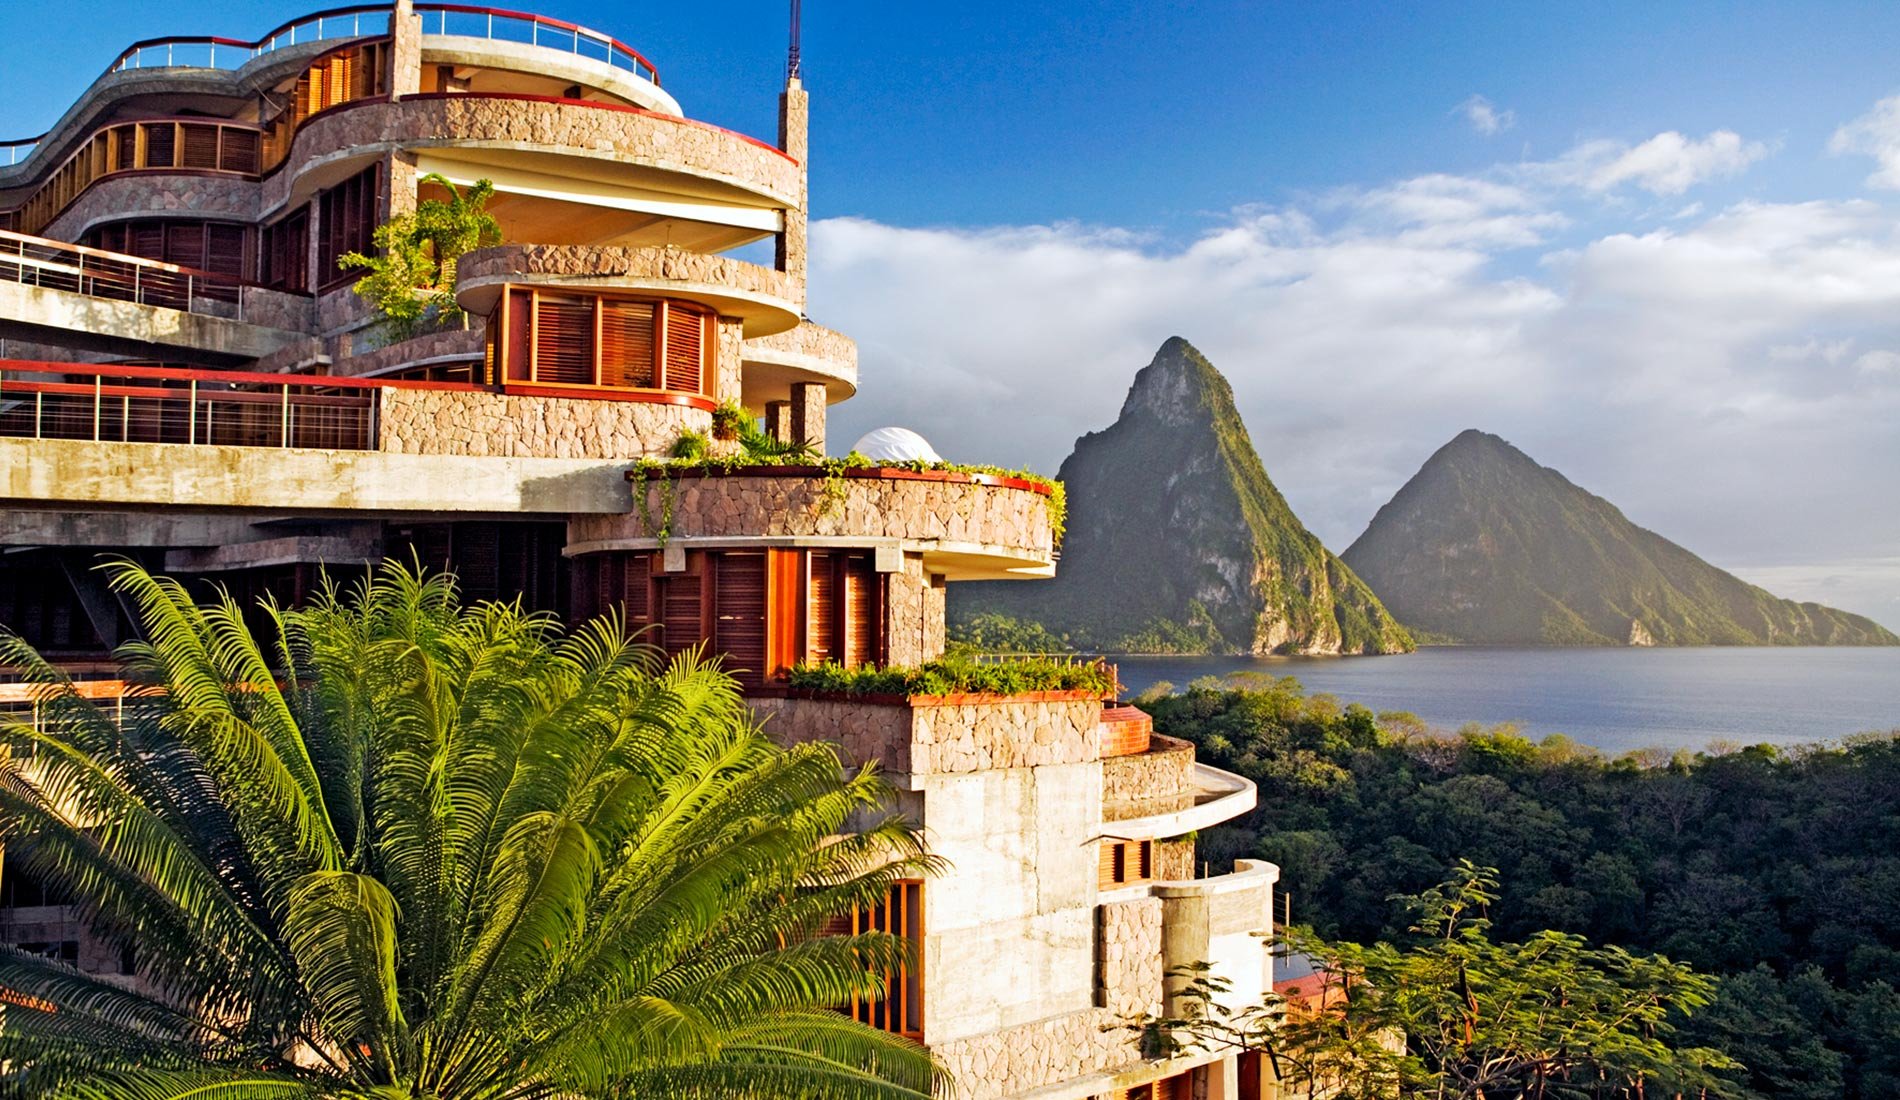 Luxury Hotel Jade Mountain resort 5 stars St Lucia caribbean island panoramic view